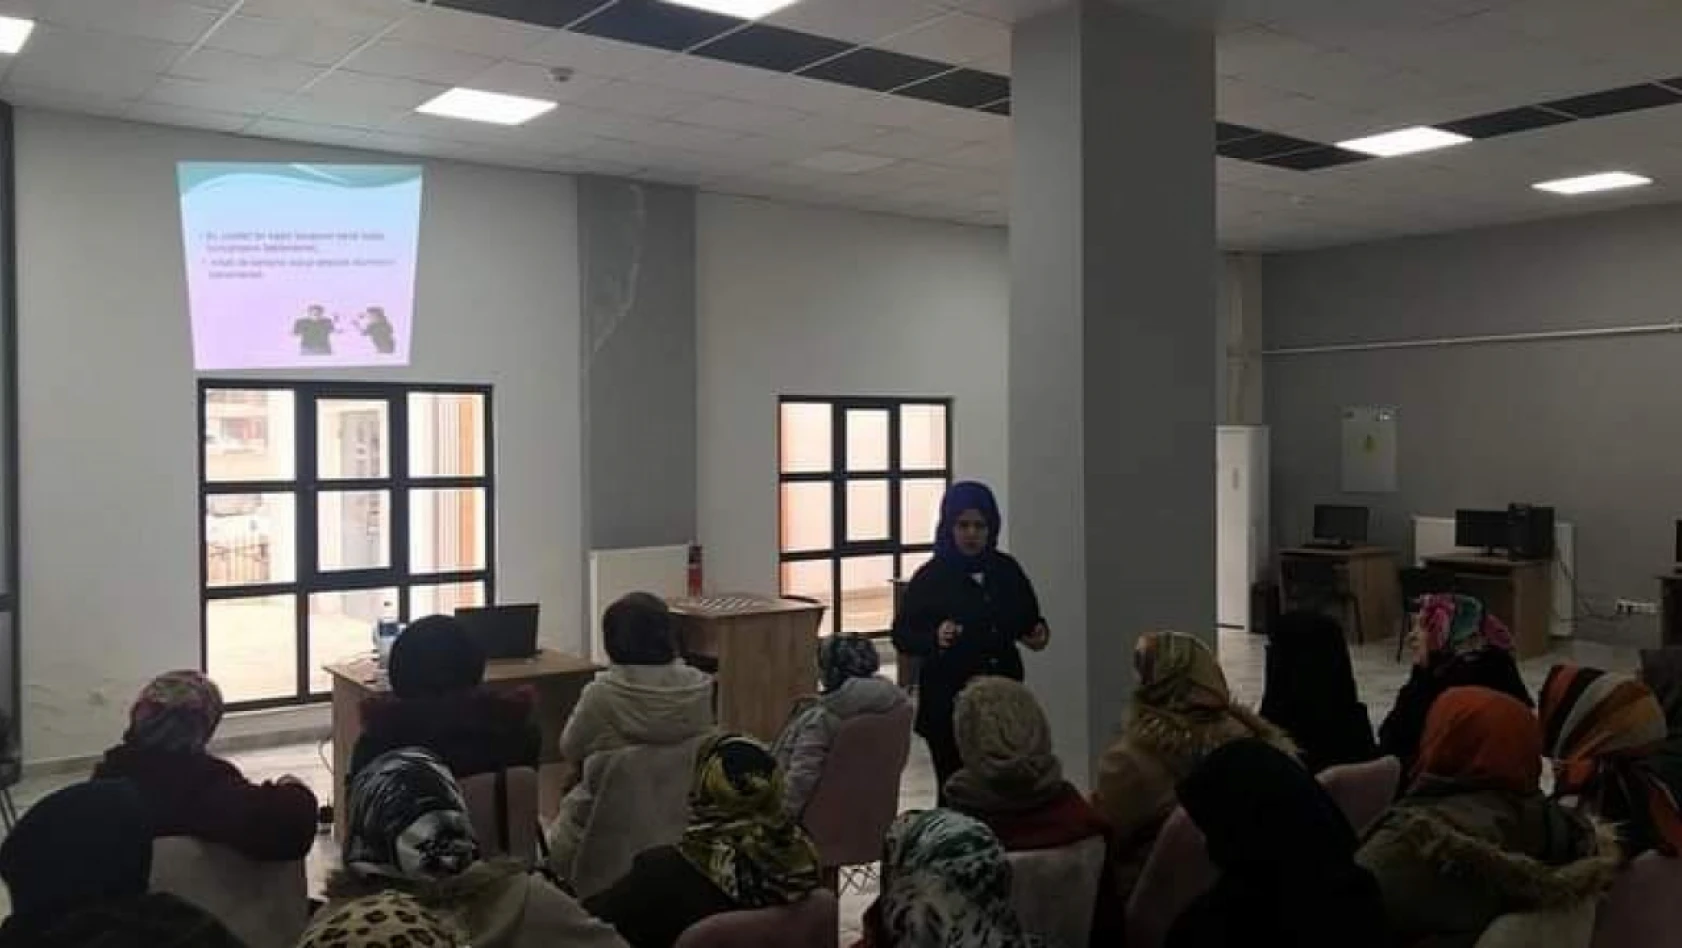 Elazığ'da 'ailede çocukla iletişim' semineri düzenlendi